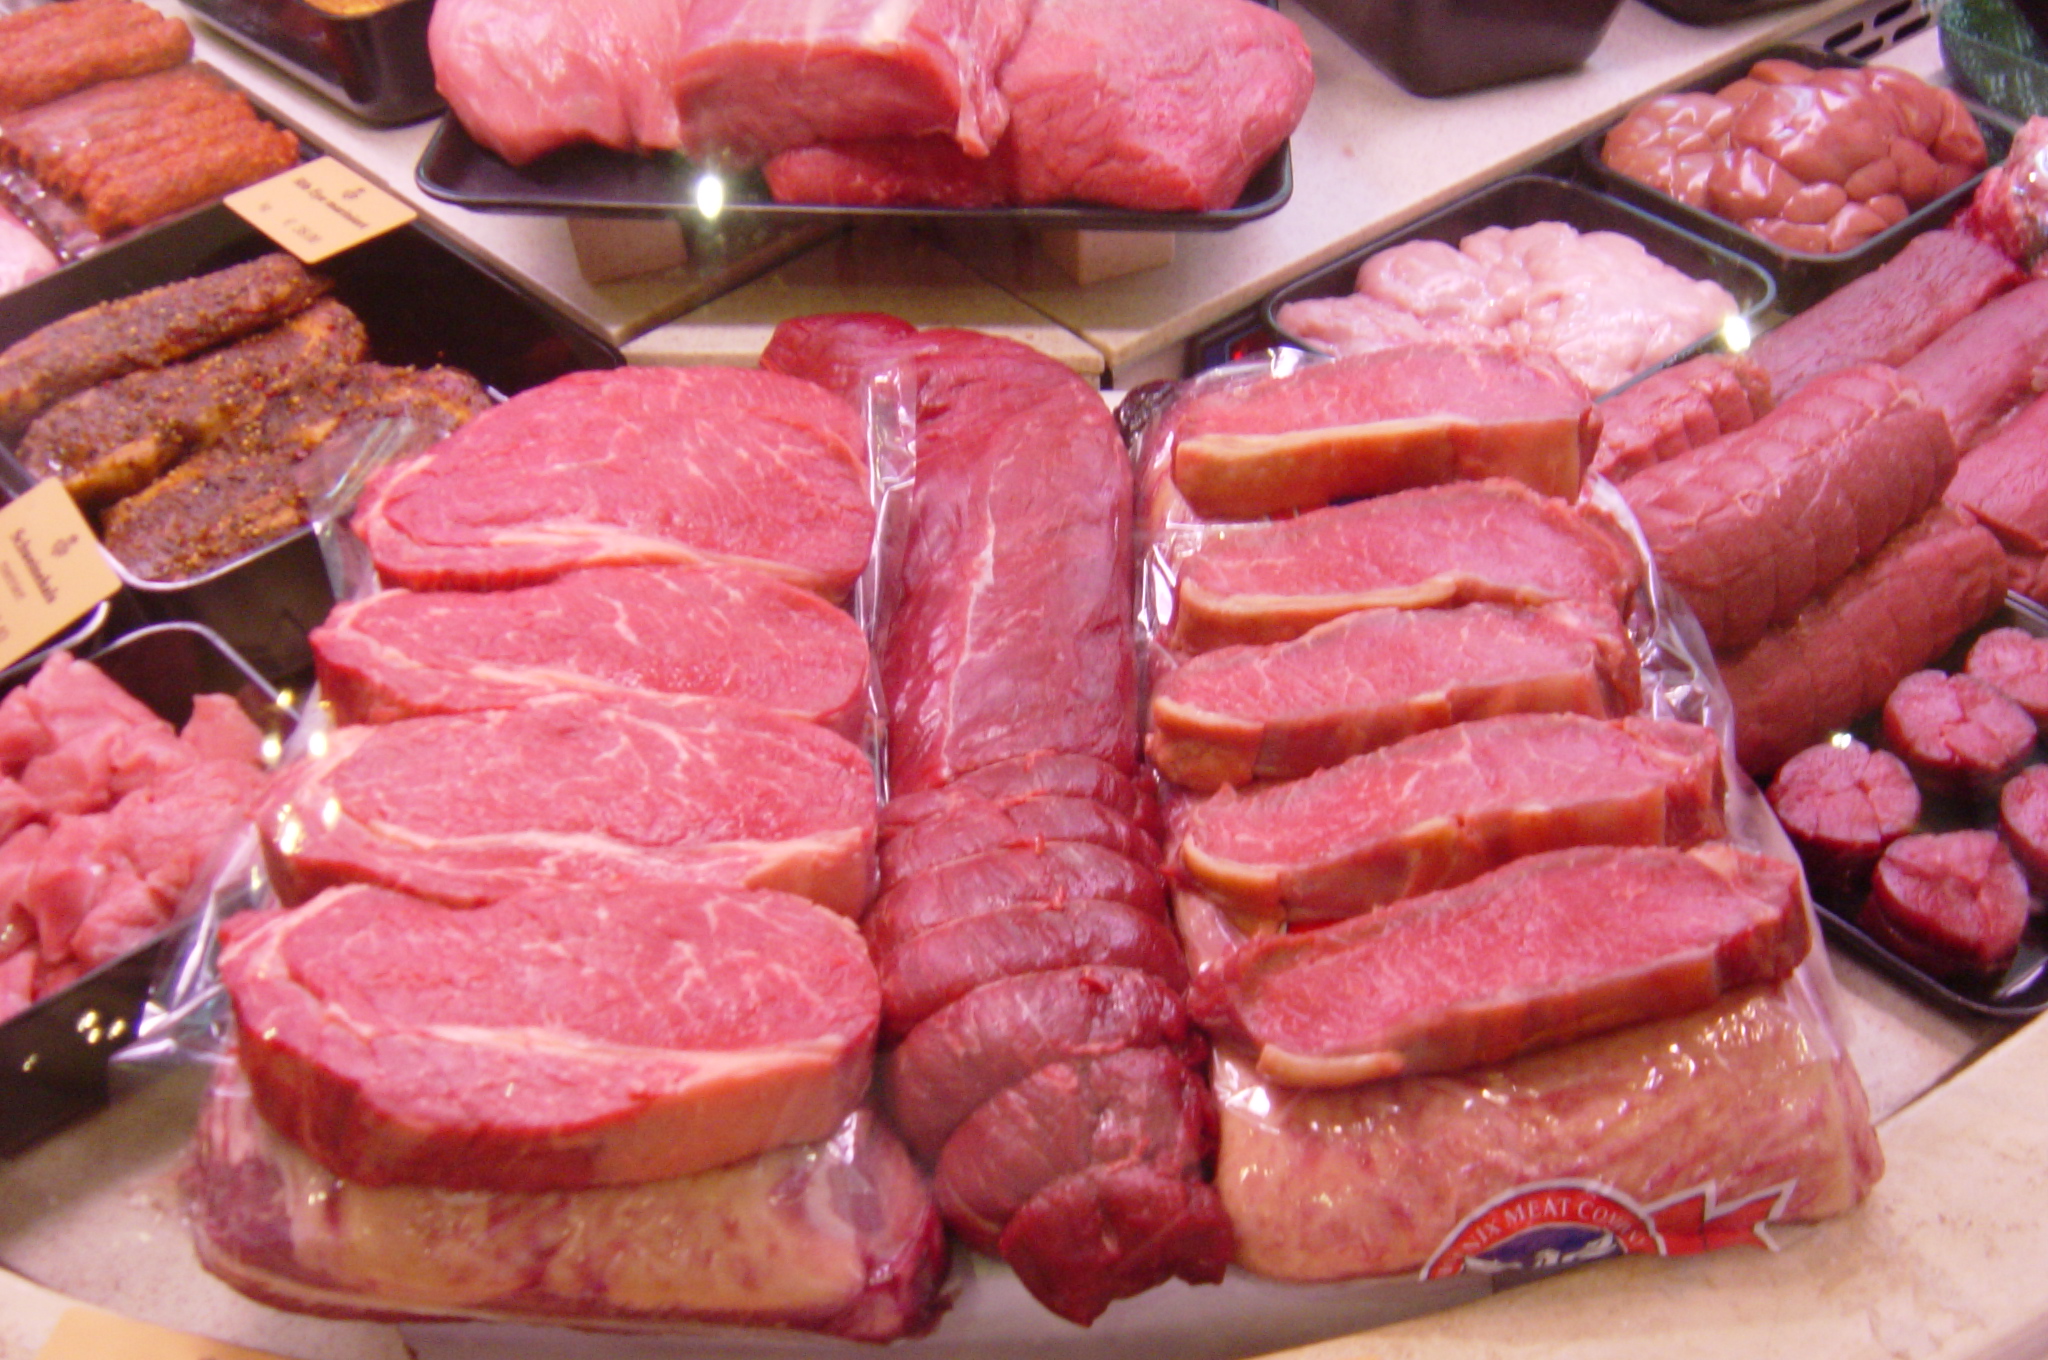 Cervene maso a rakovina